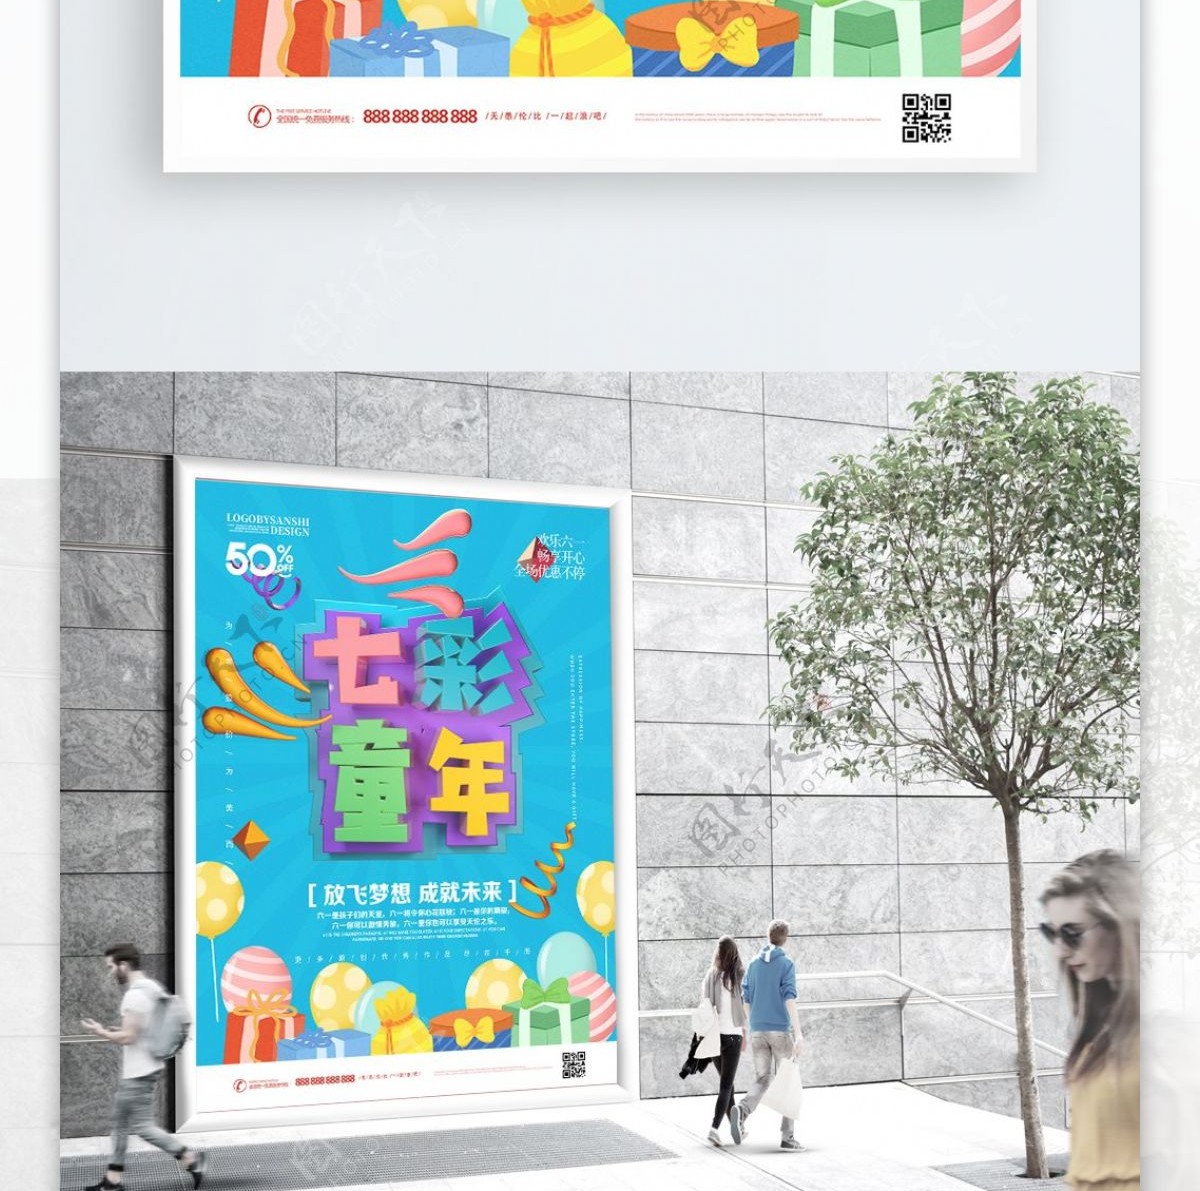 创意C4D七彩童年六一儿童节节日宣传海报